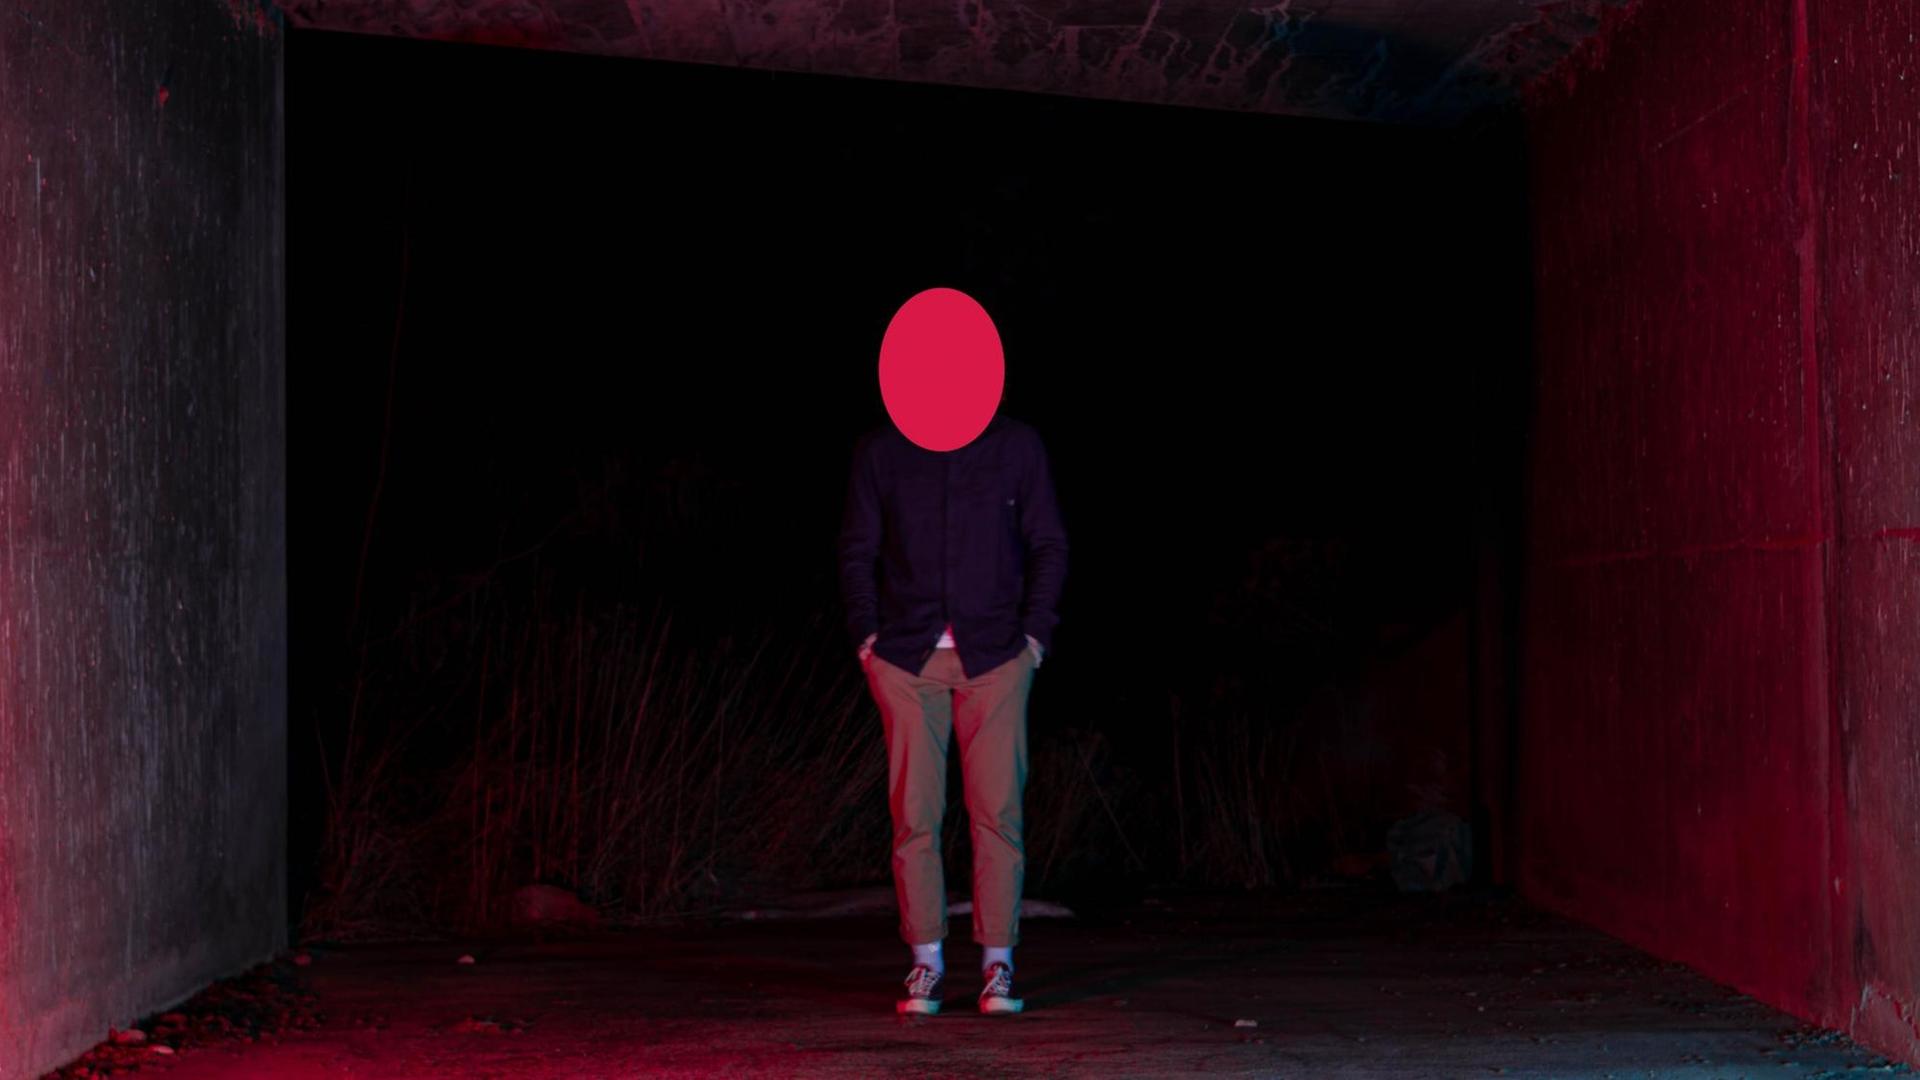 Eine männlich wirkende Person steht zwischen zwei Wänden in rotem Licht. Über dem Kopf ist eine rote elliptische Fläche, so dass kein Gesicht zu erkennen ist.